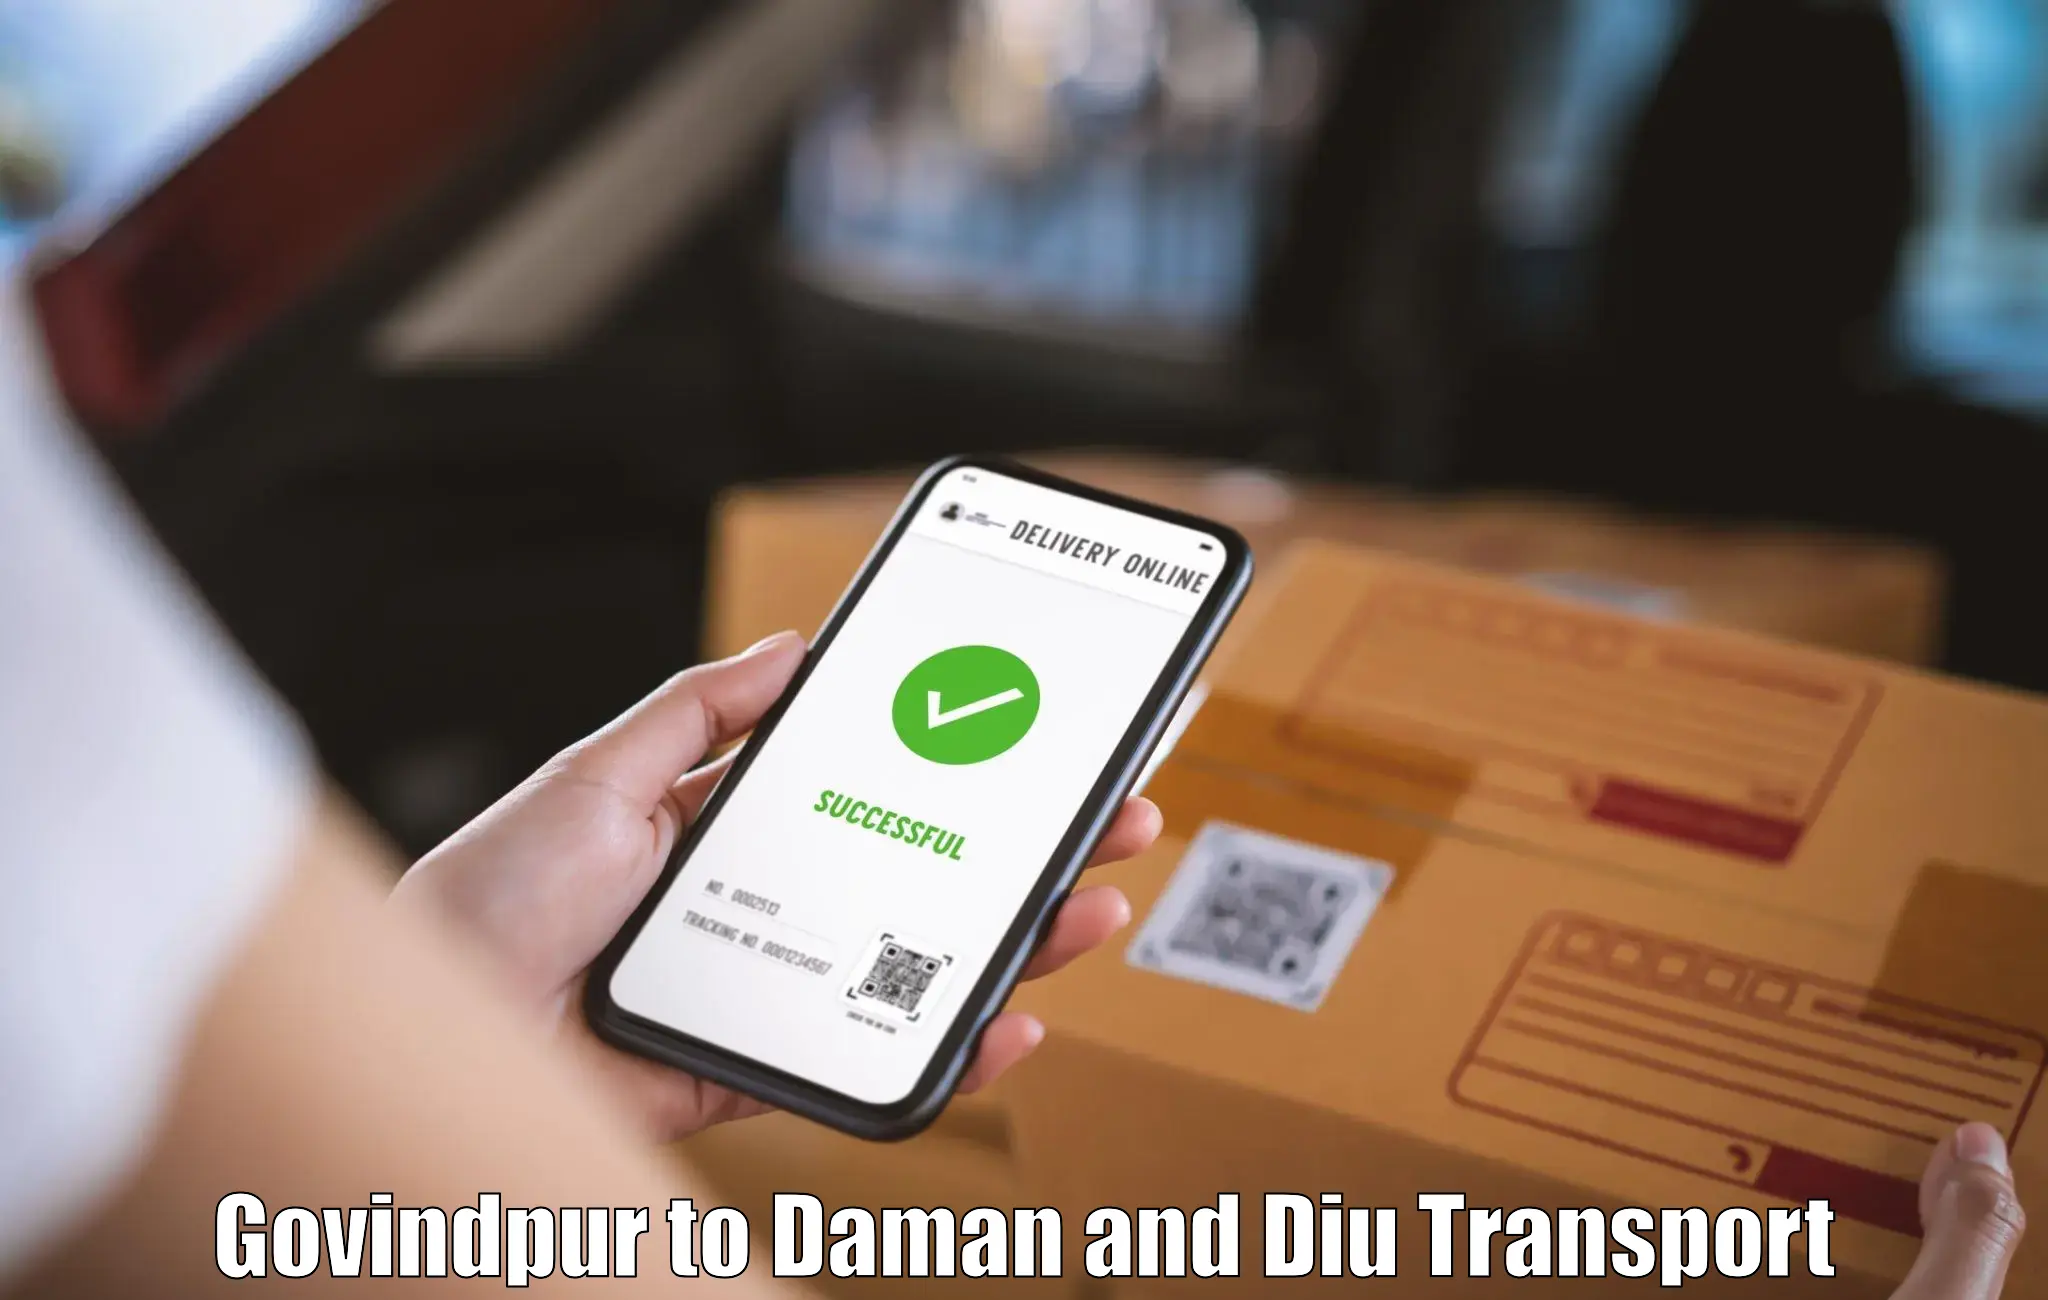 India truck logistics services Govindpur to Diu